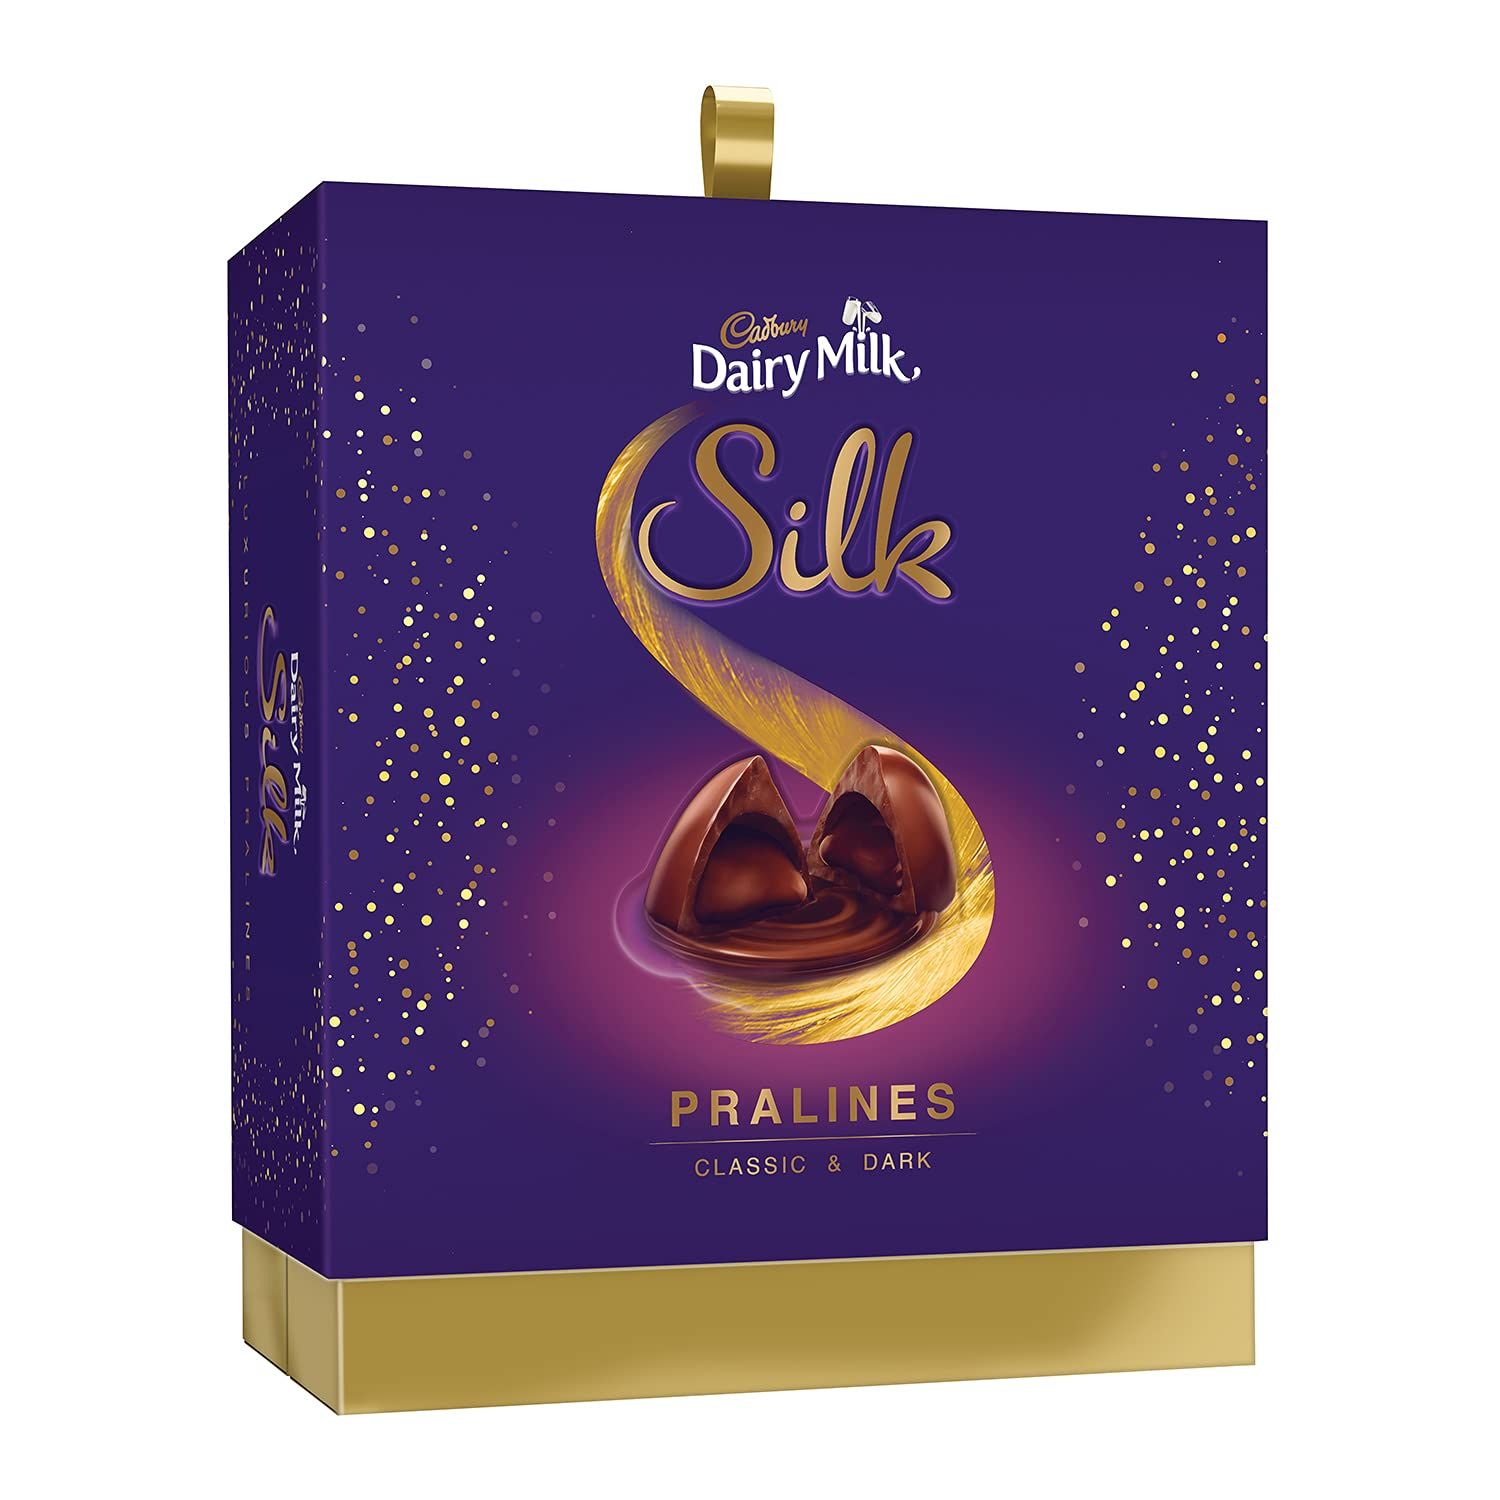 Cadburry Dairy Milk Silk Pralines Chocolate Gift Box Image